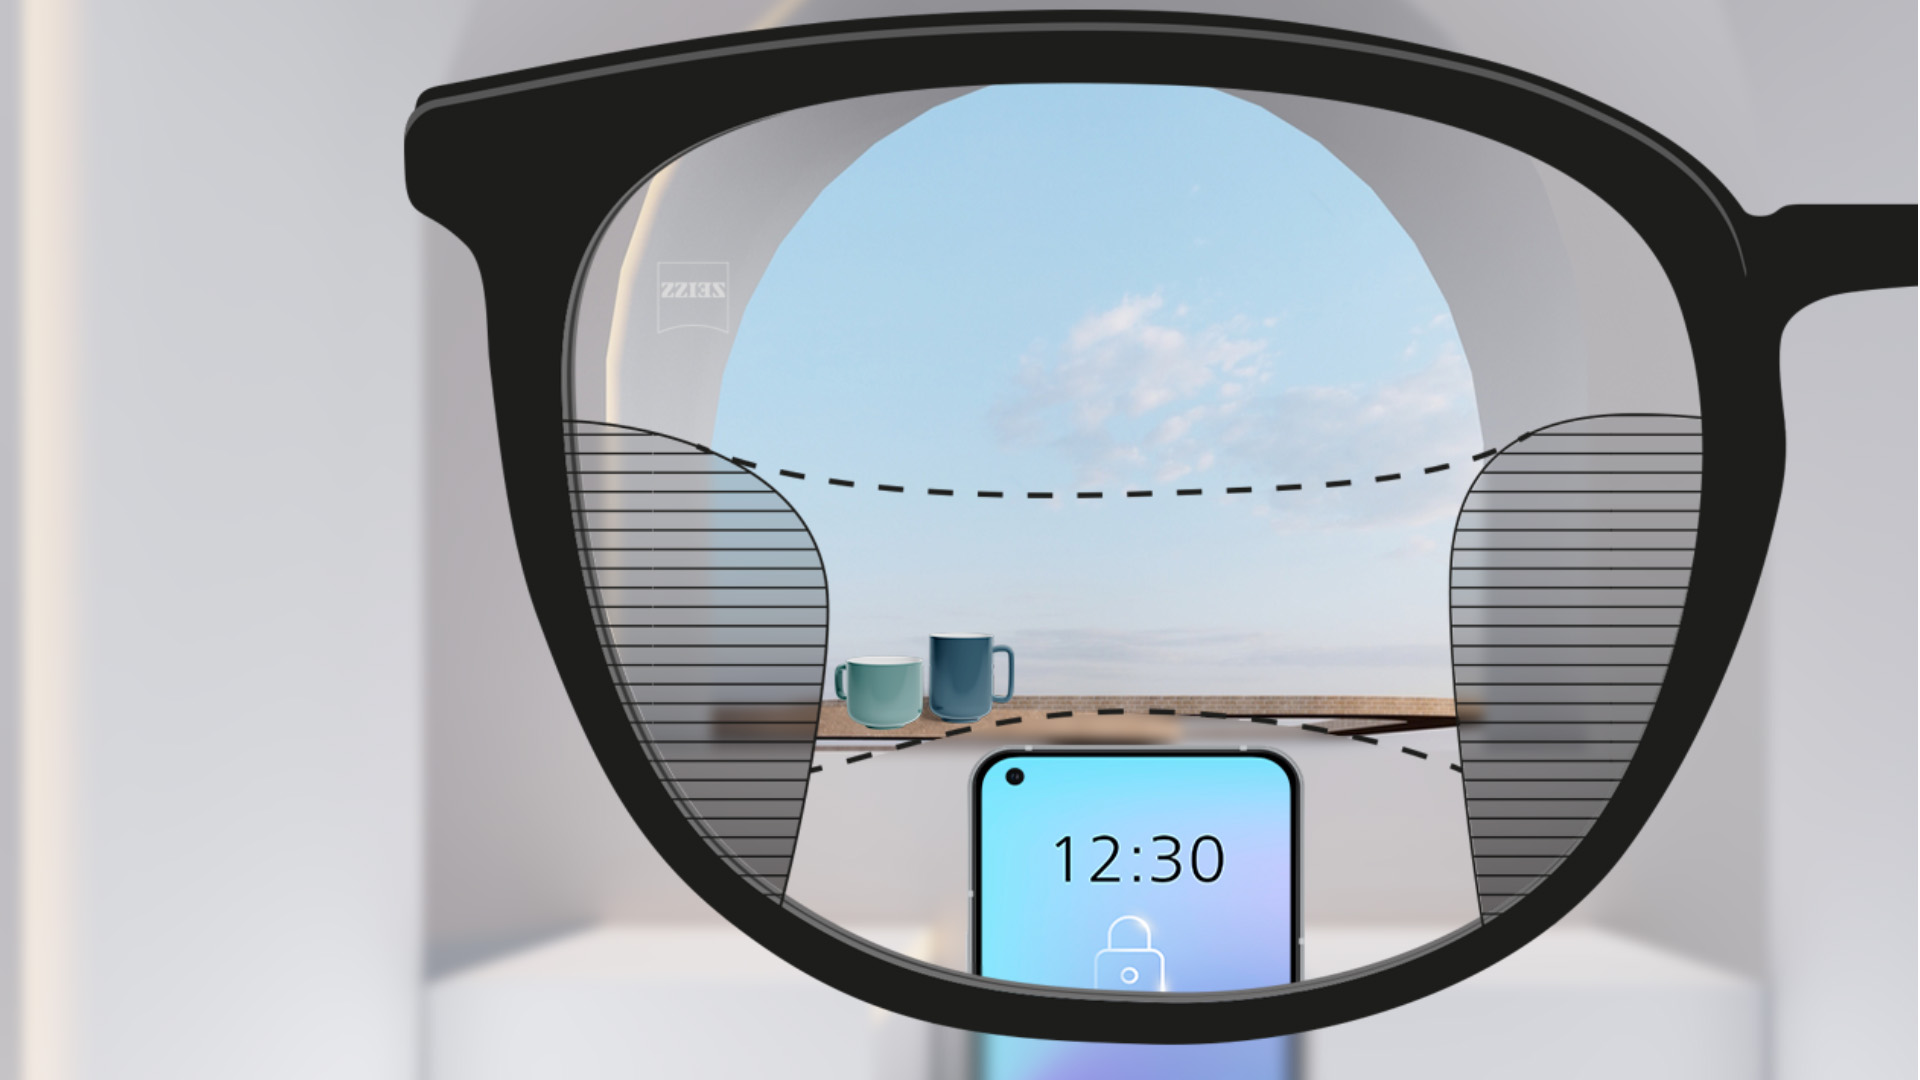 Une image montrant le point de vue à travers un verre ZEISS Progressive SmartLife, avec un smartphone et des tasses en arrière-plan alors que le verre est entièrement net avec des fines zones floues à gauche et à droite.